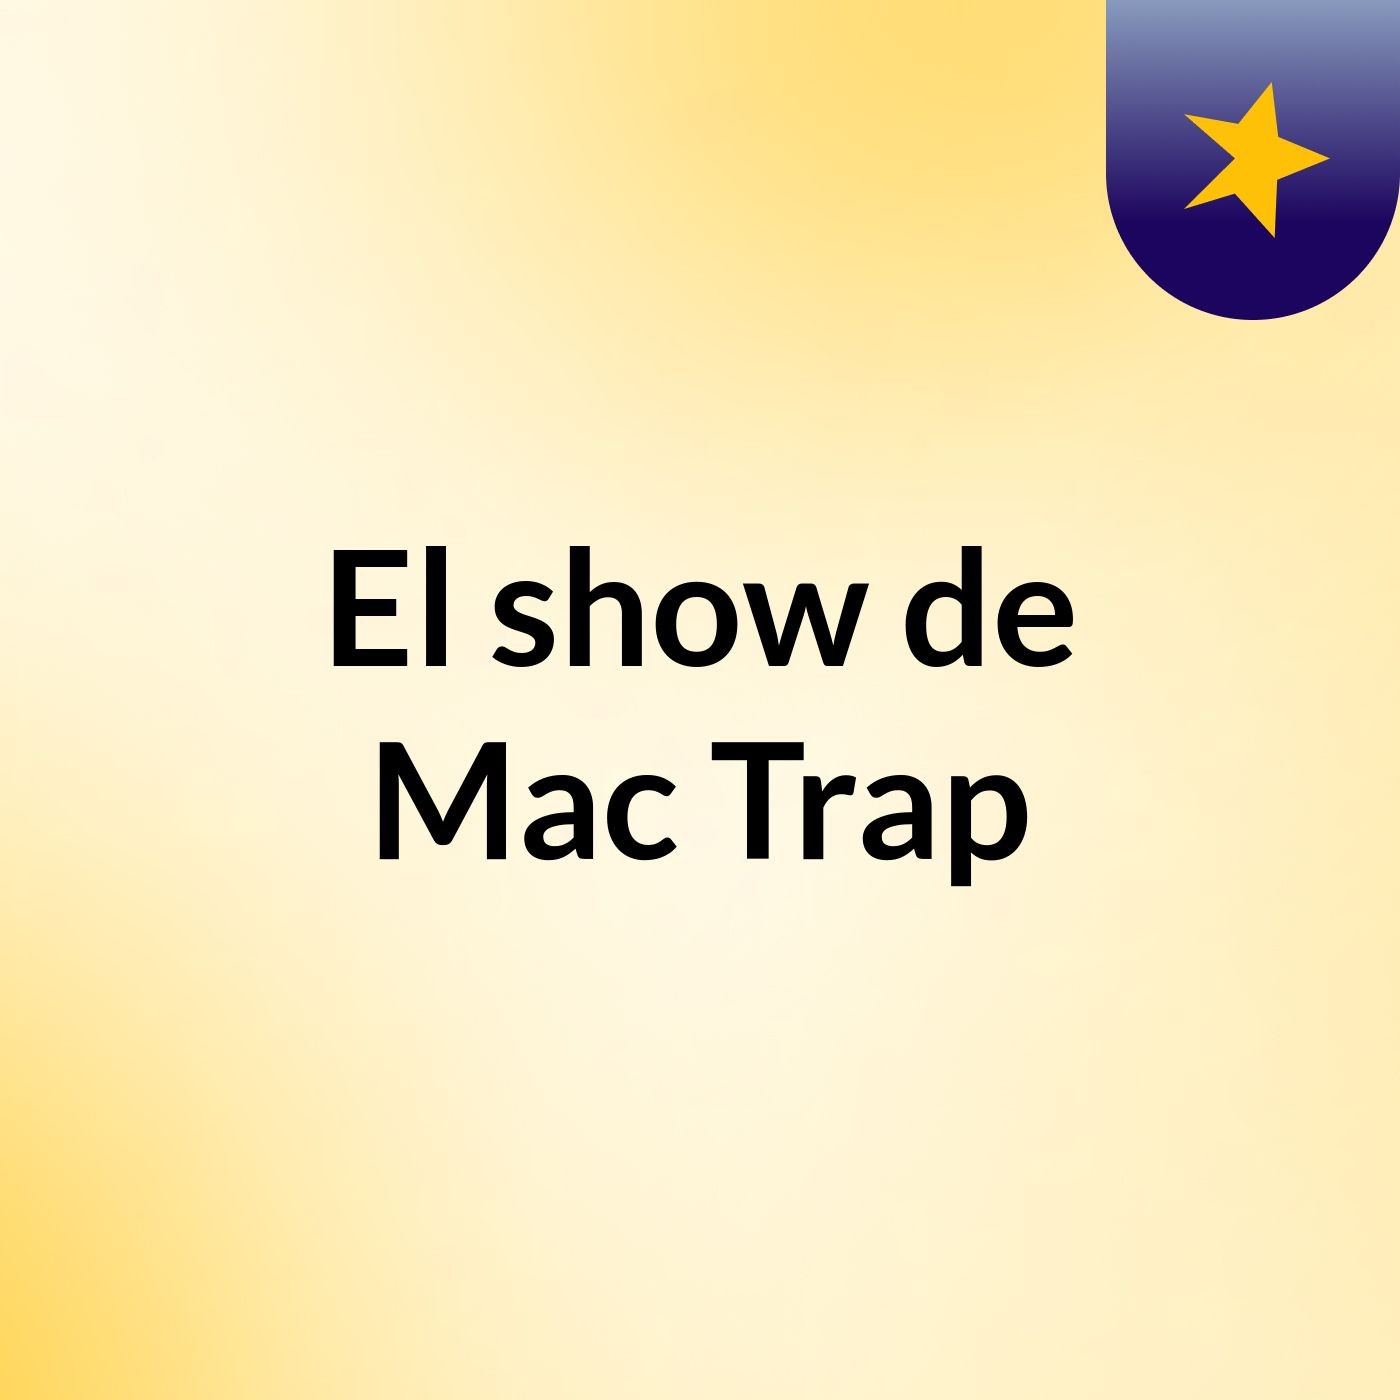 El show de Mac Trap